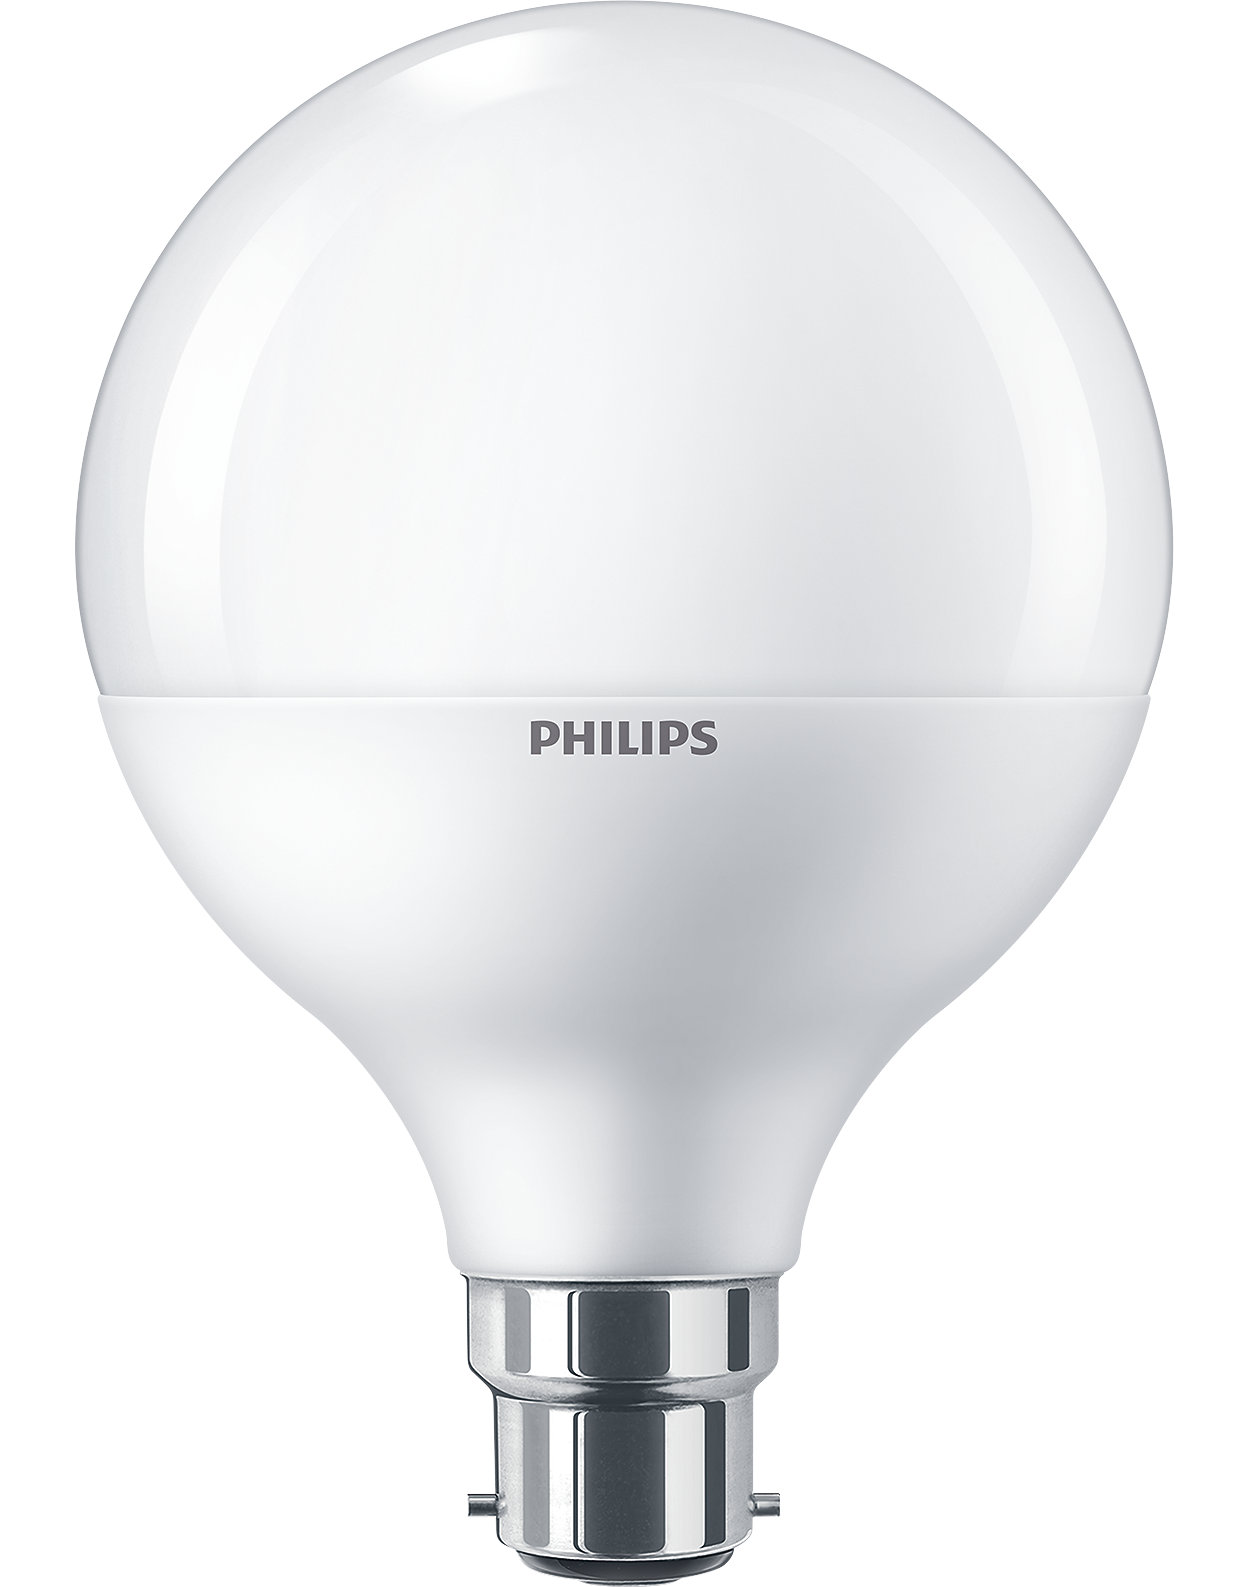 A light bulb like no other